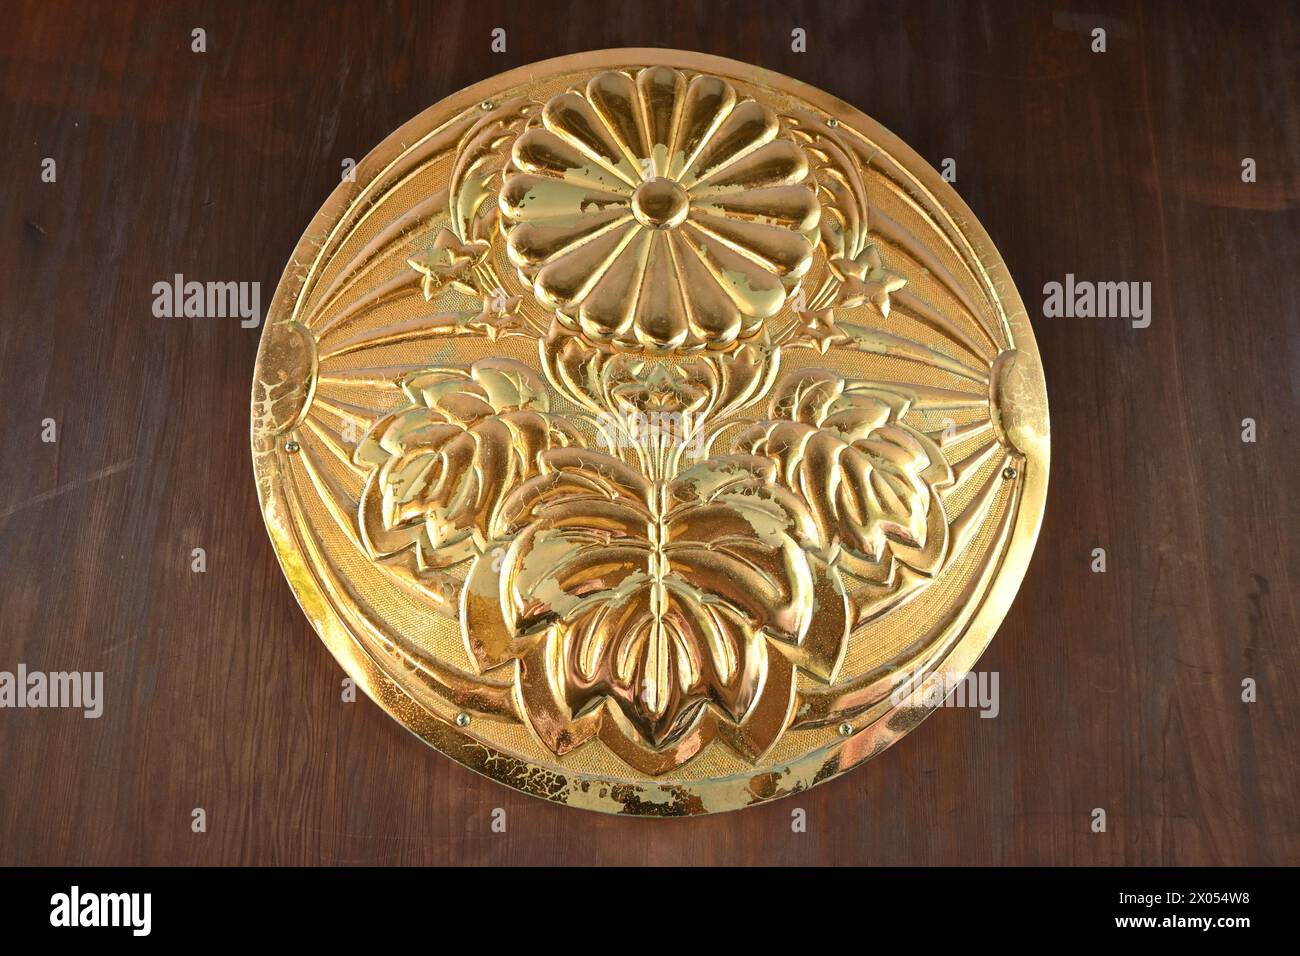 Sceau de porte doré avec badge Gensui de la Marine impériale japonaise (Paulownia, Chrysanthème et drapeau du soleil levant) Tōgō Sanctuaire - Shibuya City, Tokyo, Japon Banque D'Images